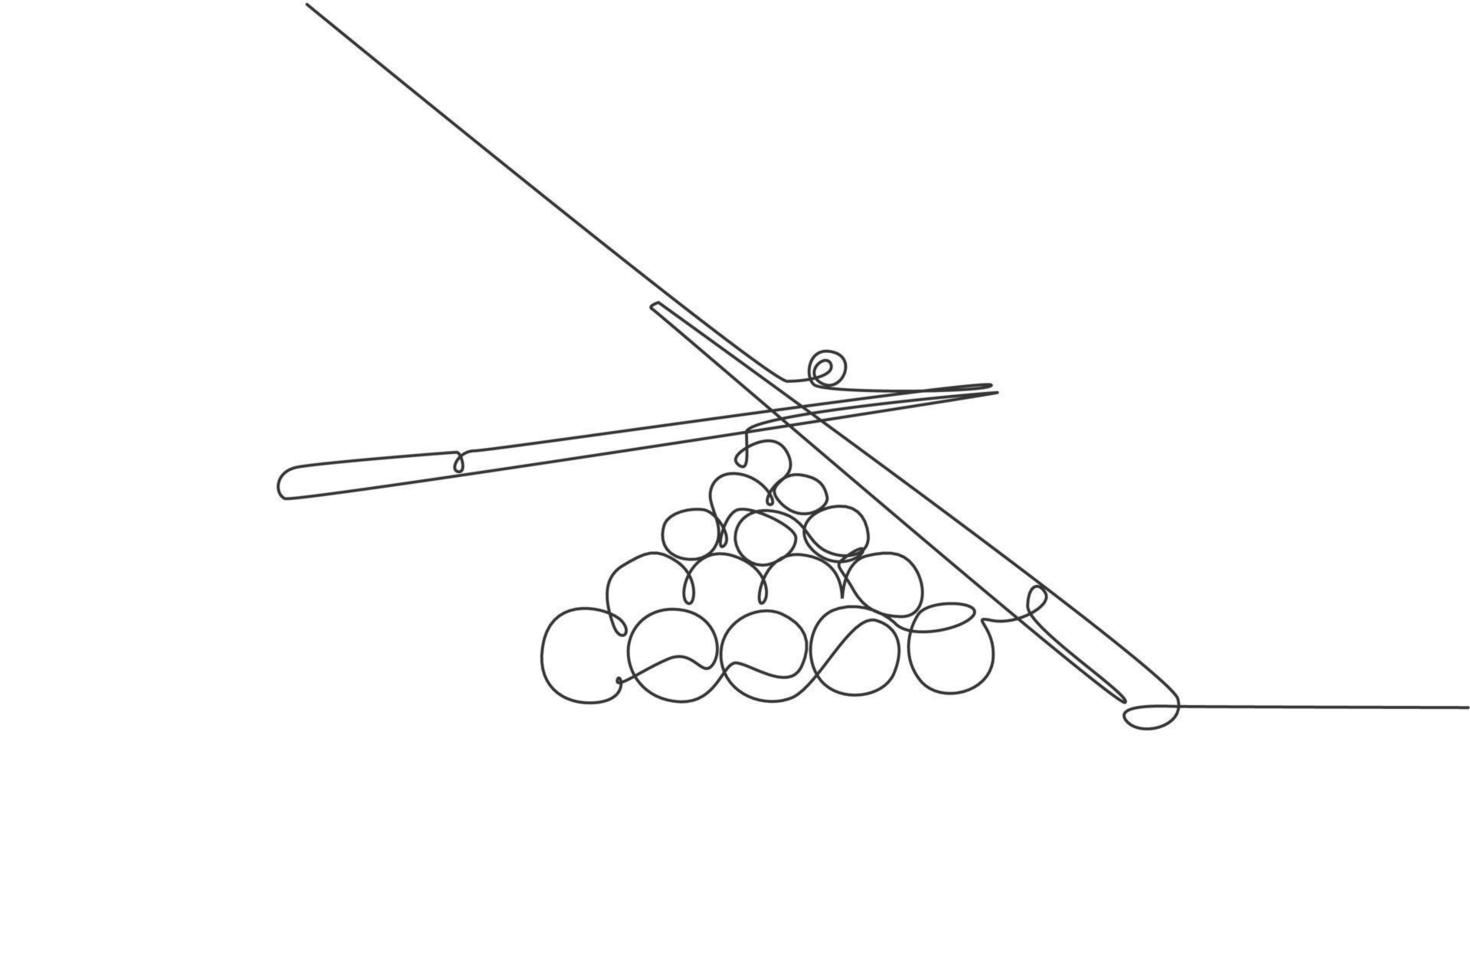 eine einzige Strichzeichnung von dreieckigen Pyramidenkugeln stapeln sich für Pool-Billard-Spiele im Billardraum, Vektorgrafik-Illustration. Indoor-Sport-Freizeitspielkonzept. modernes Design mit durchgehender Linie vektor